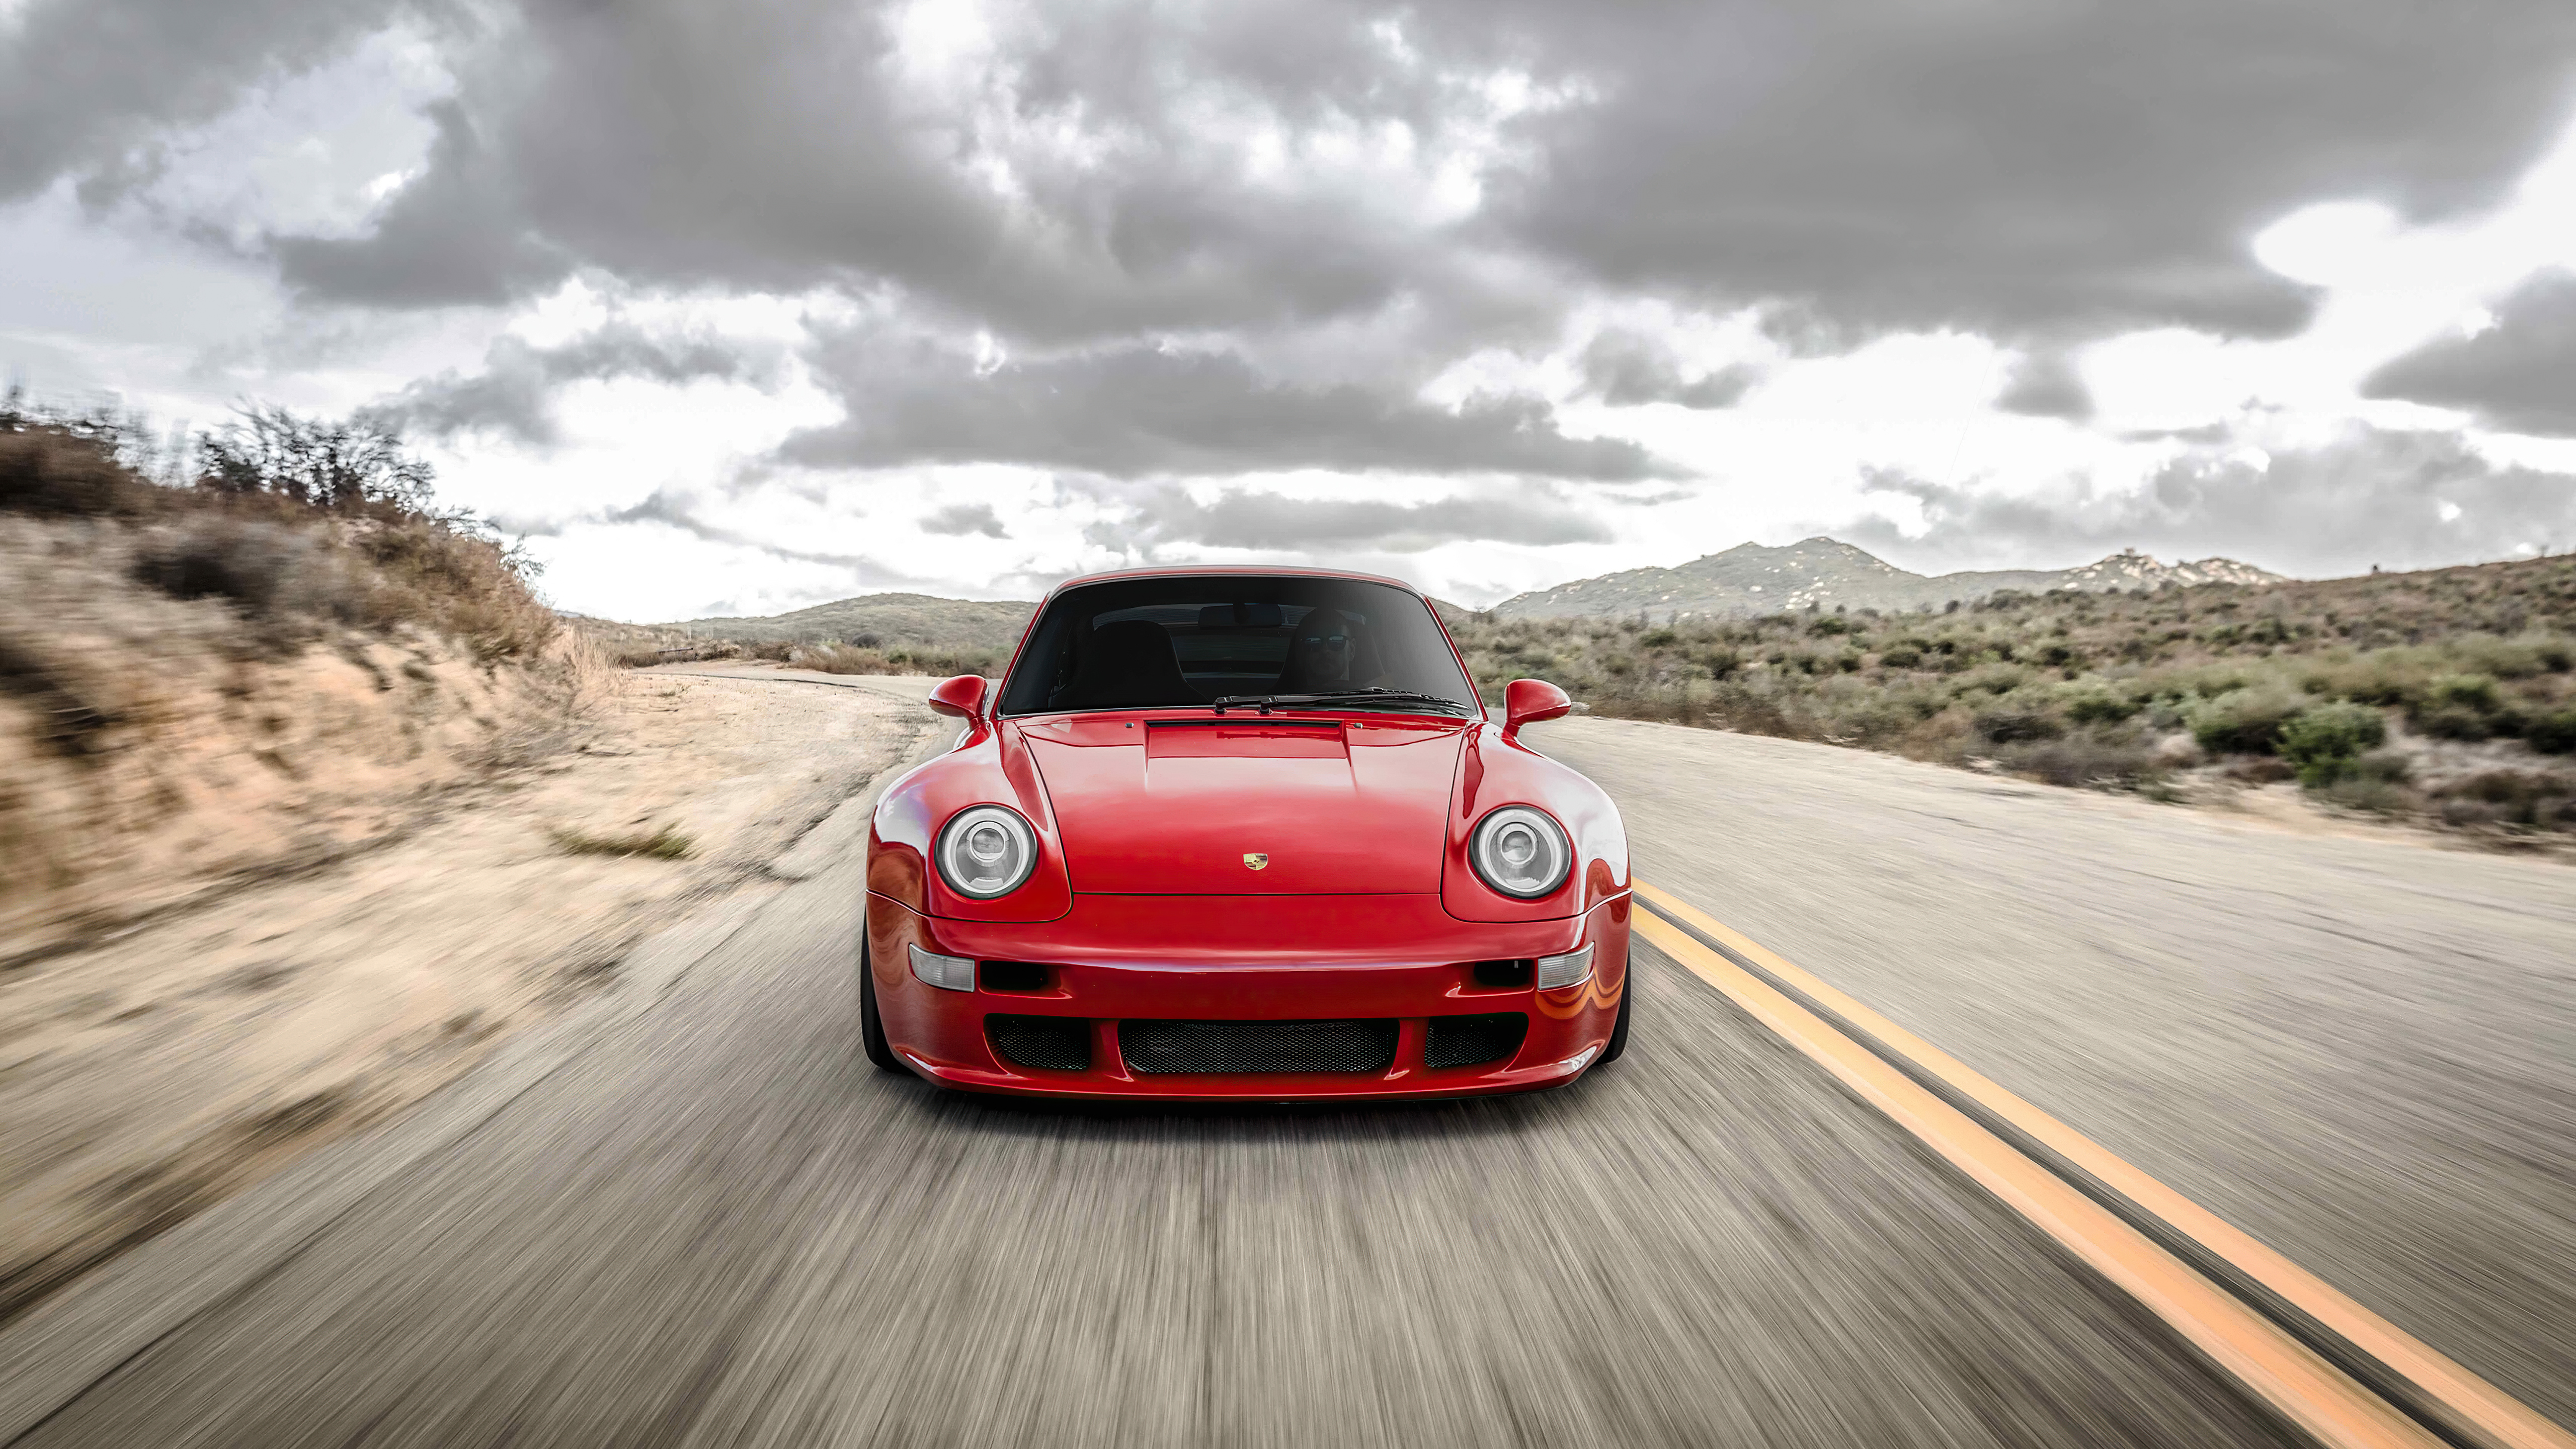 Красный Porsche 911 едет по трассе вид спереди